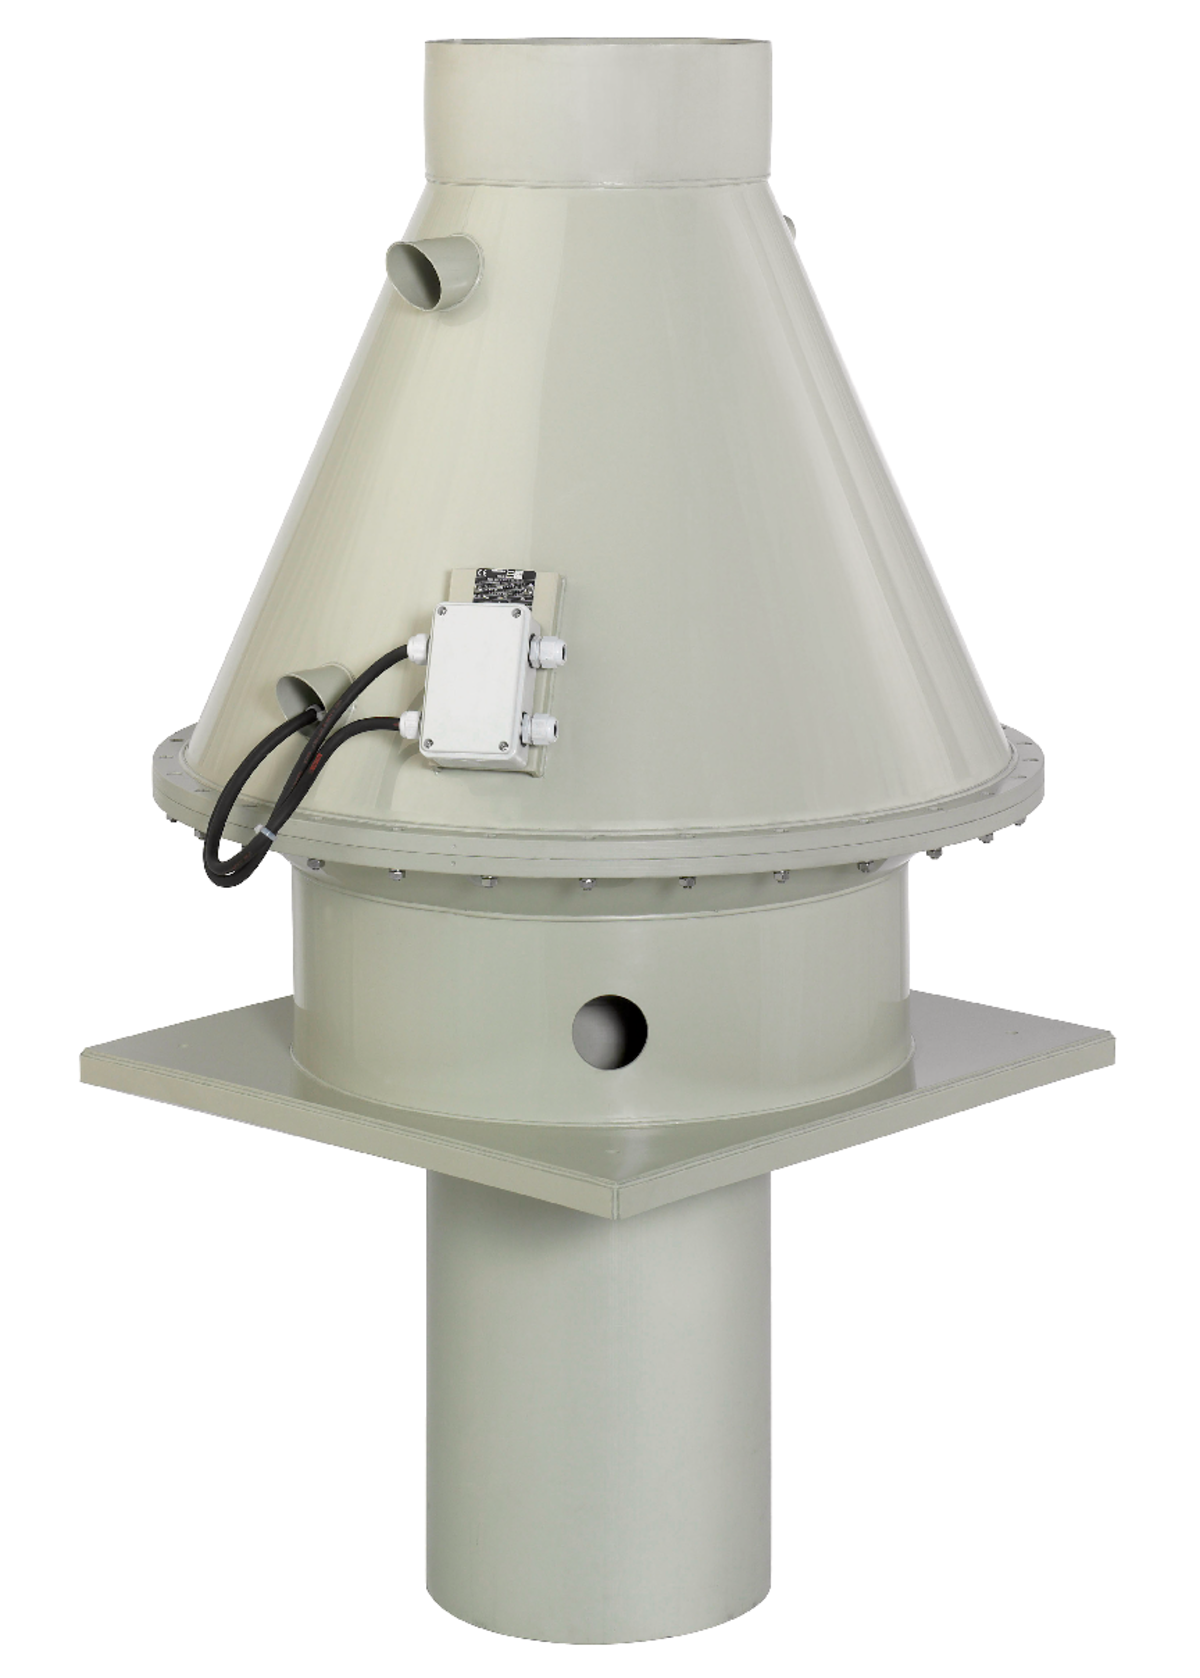 DVP - Stoginiai ventiliatoriai - Ventiliatoriai - Produktai - Systemair